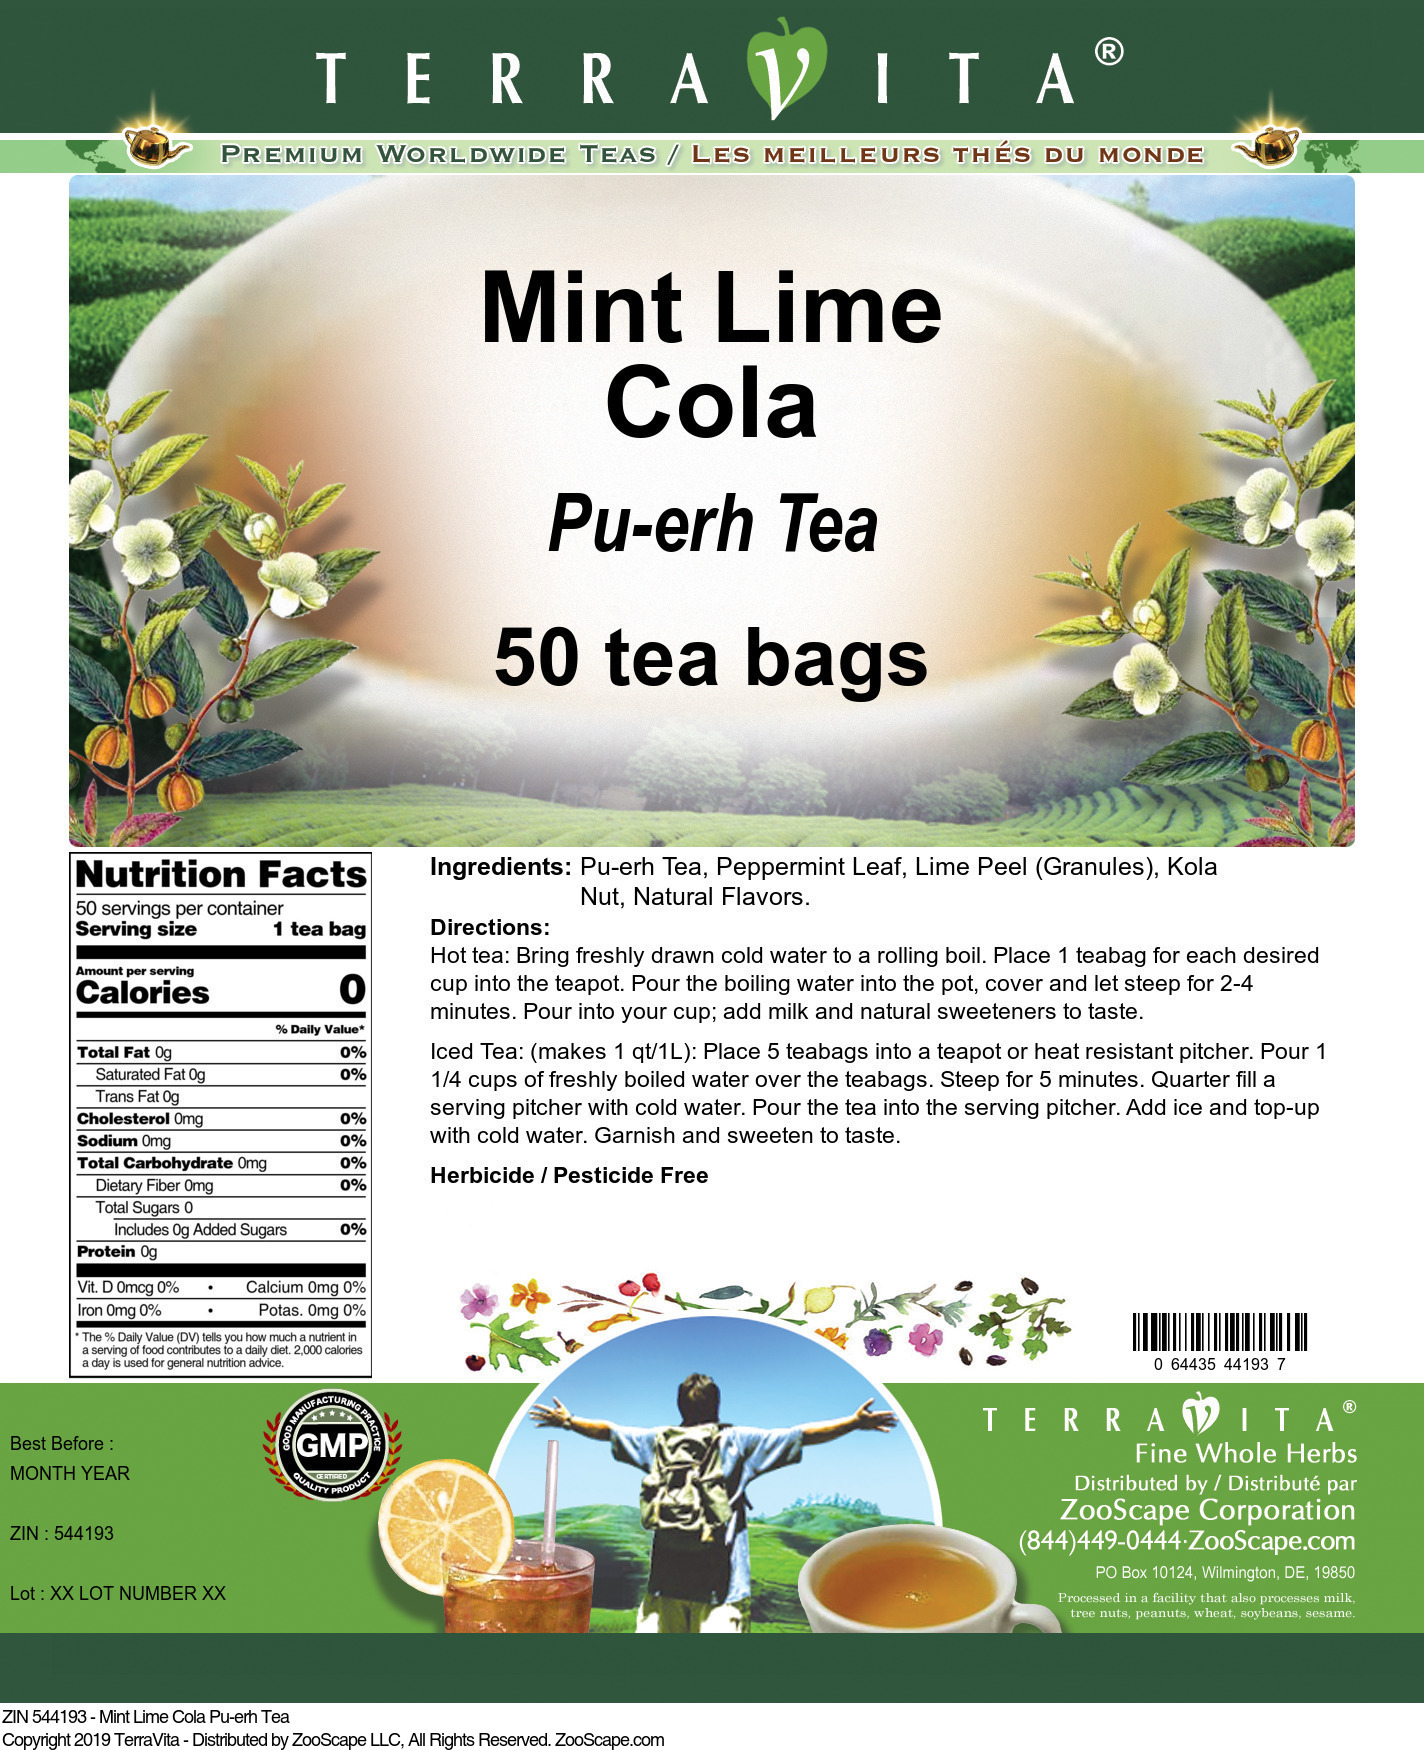 Mint Lime Cola Pu-erh Tea - Label